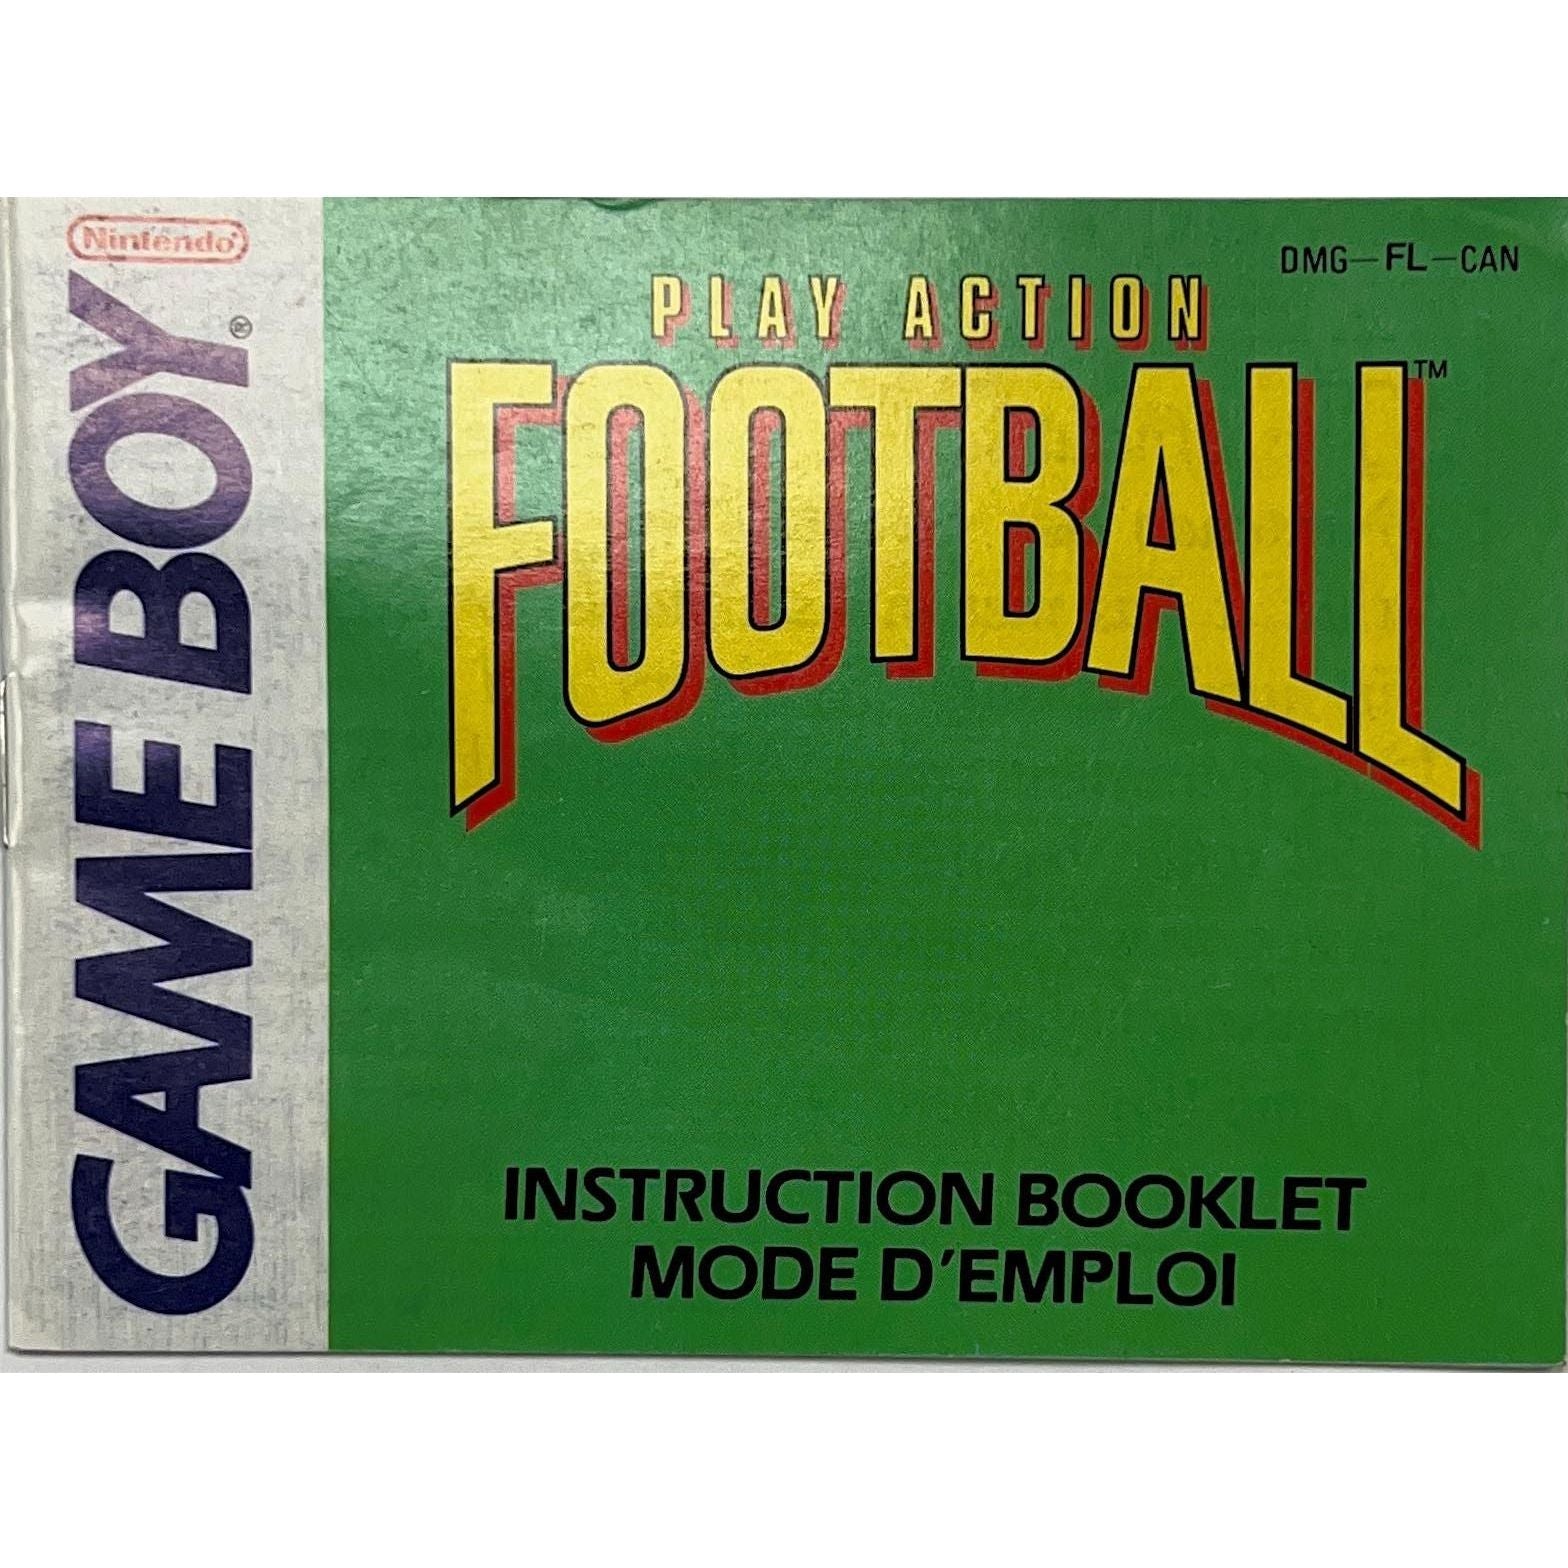 GB - Play Action Football (Manual)